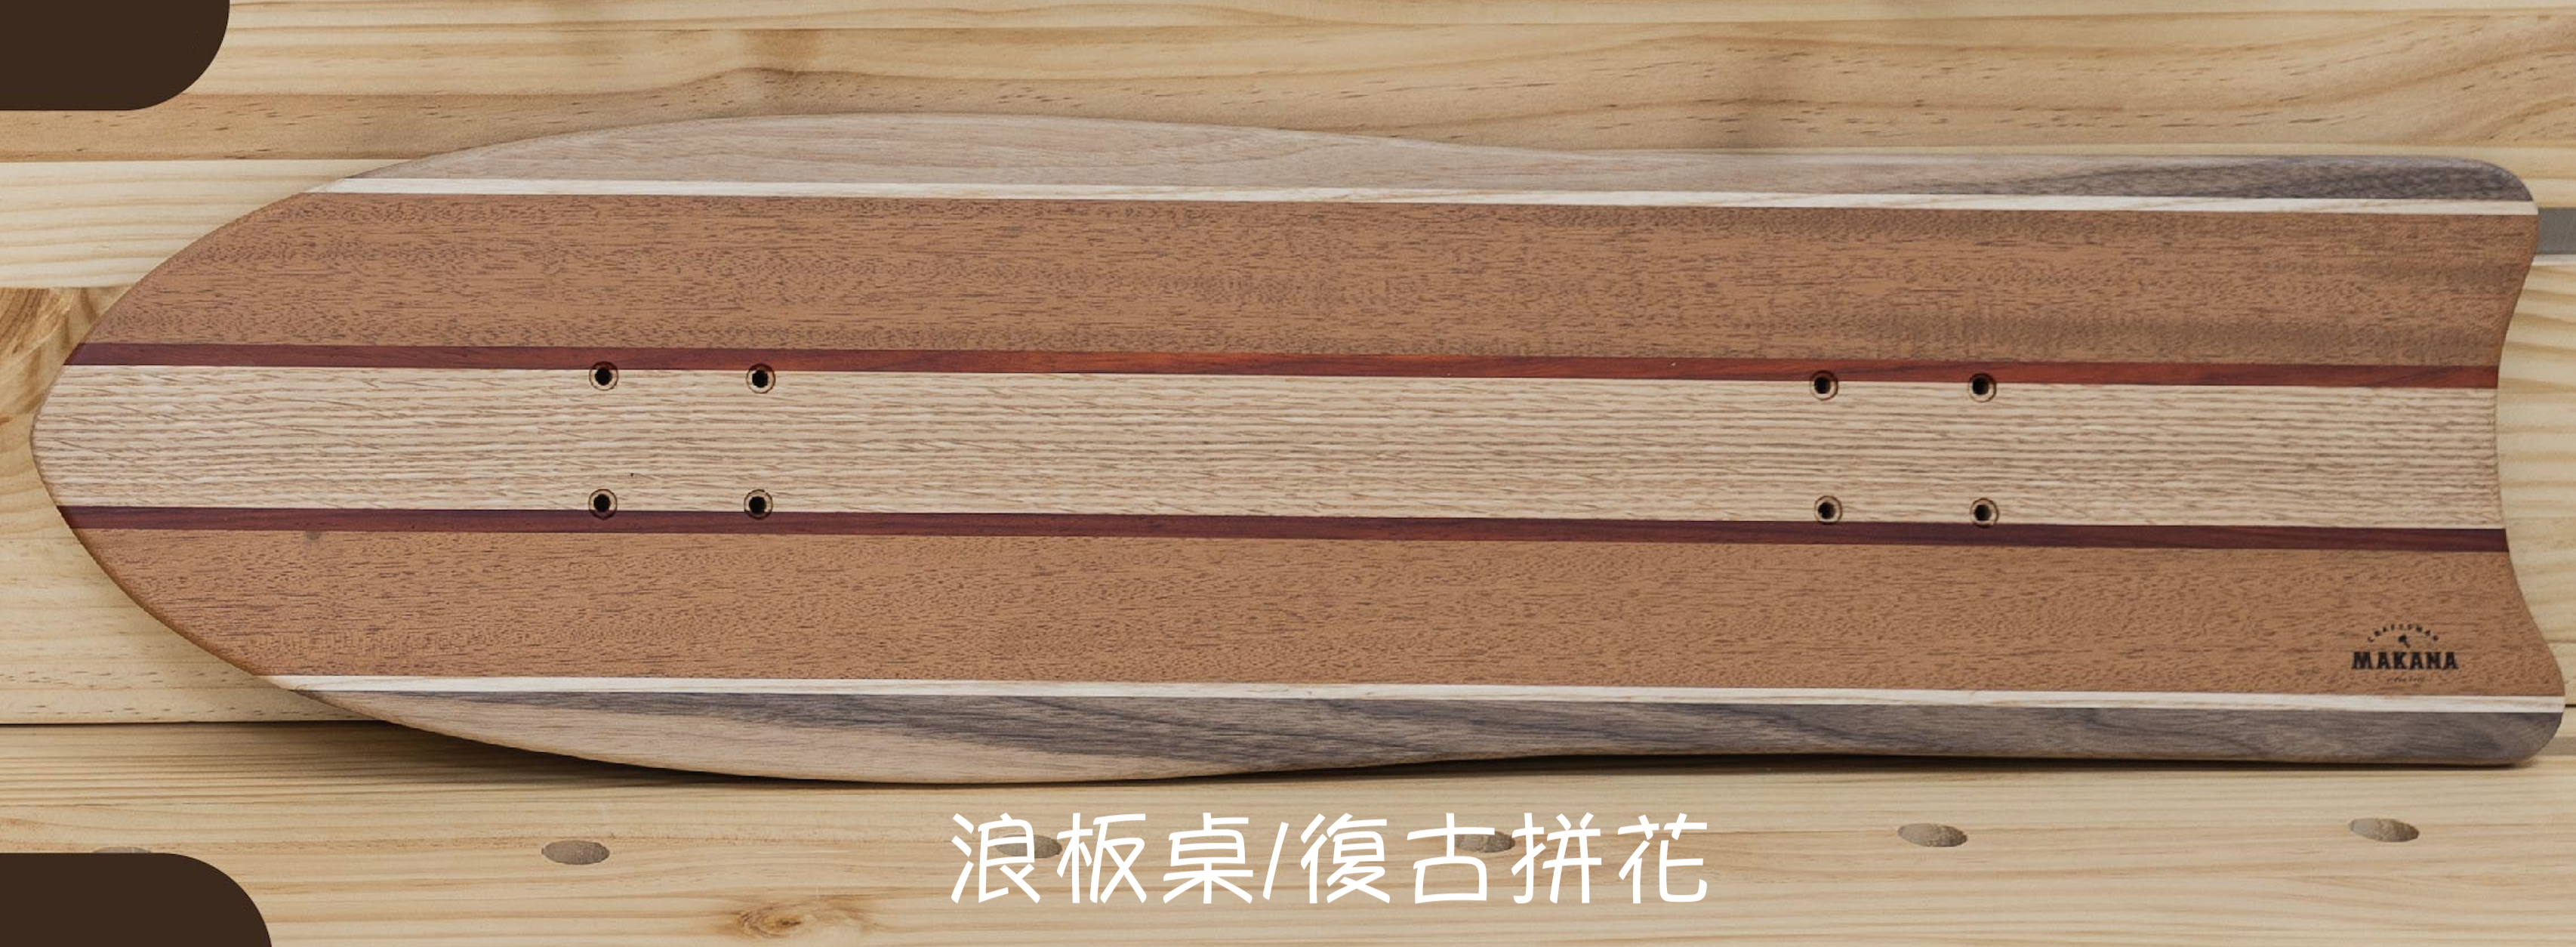 Makana 手工實木滑板桌 (共3款，2種花色)